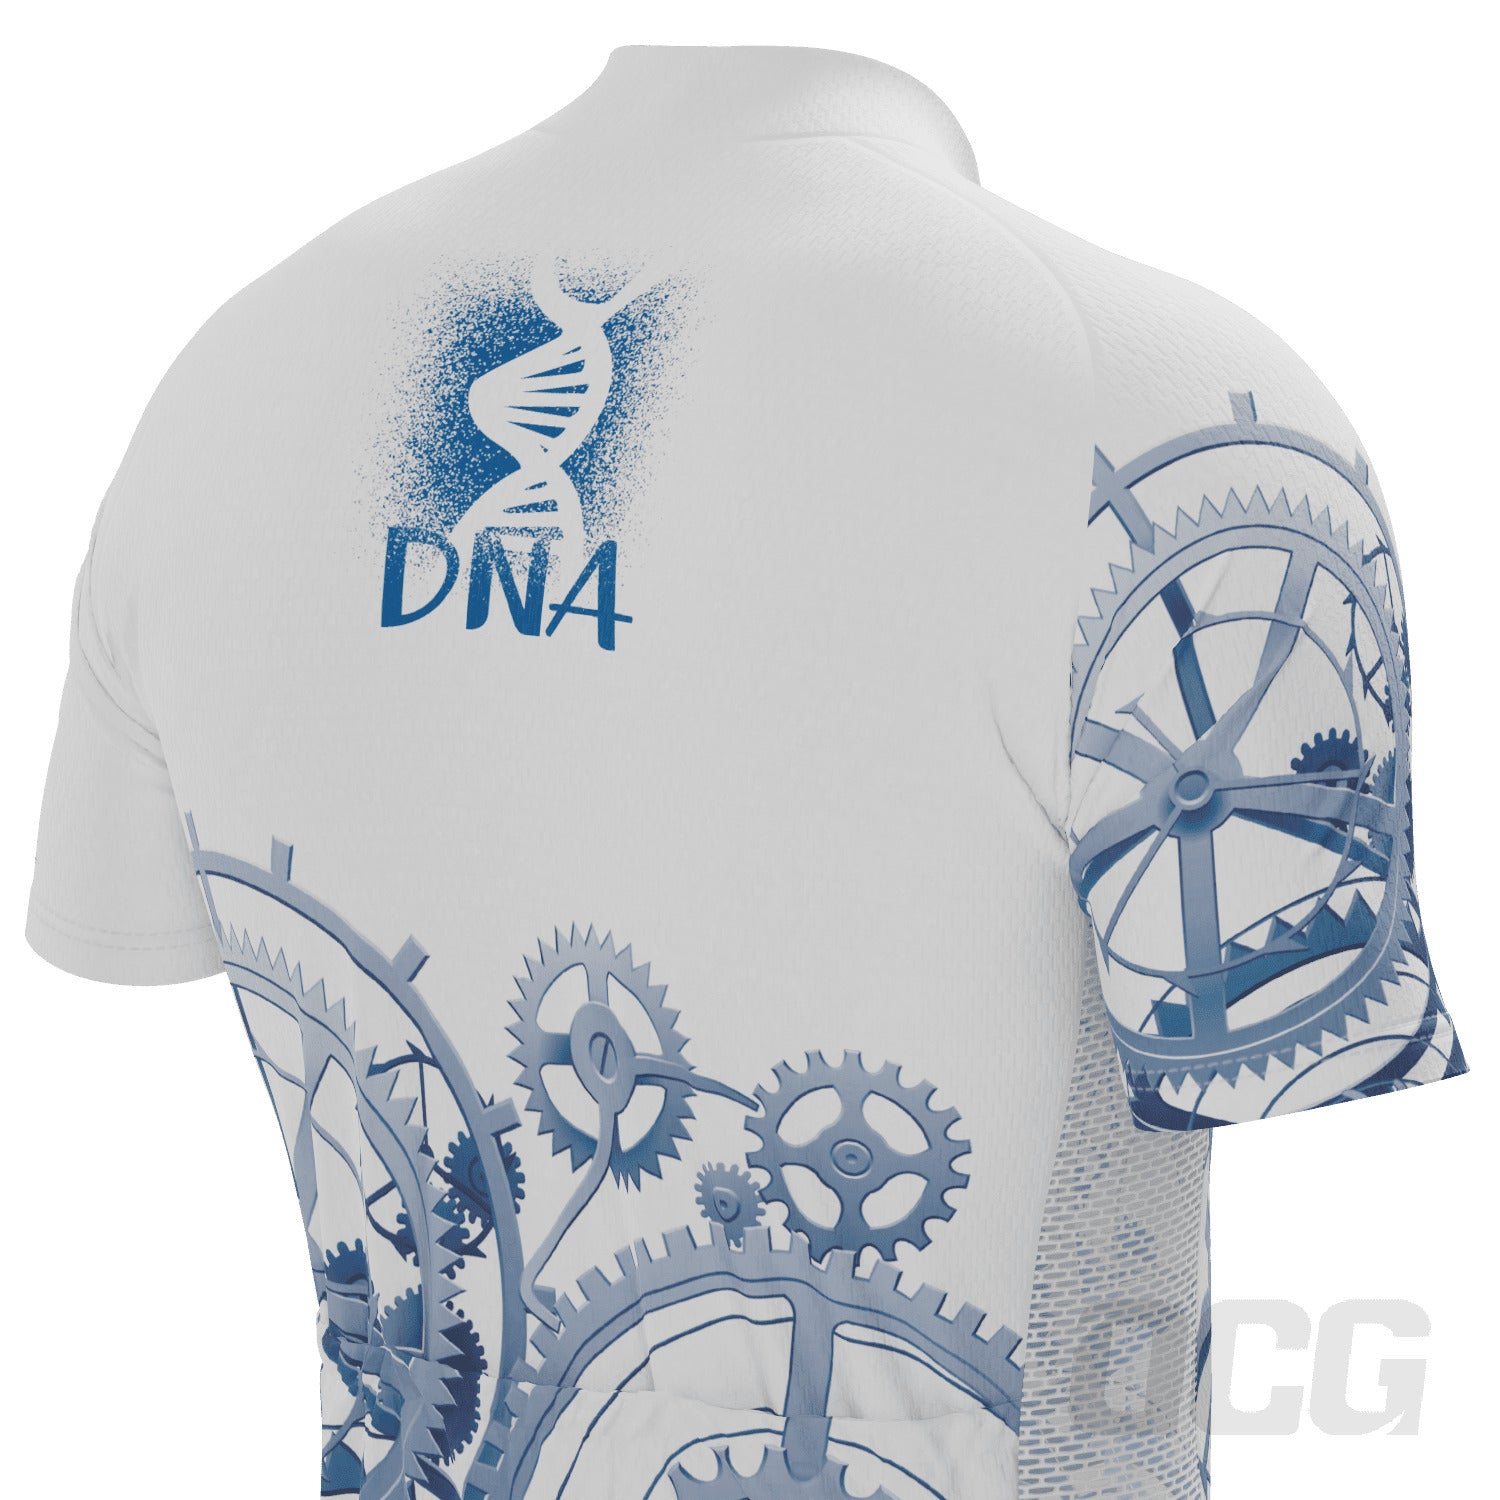 Men's DNA White 2 Piece Cycling Kit